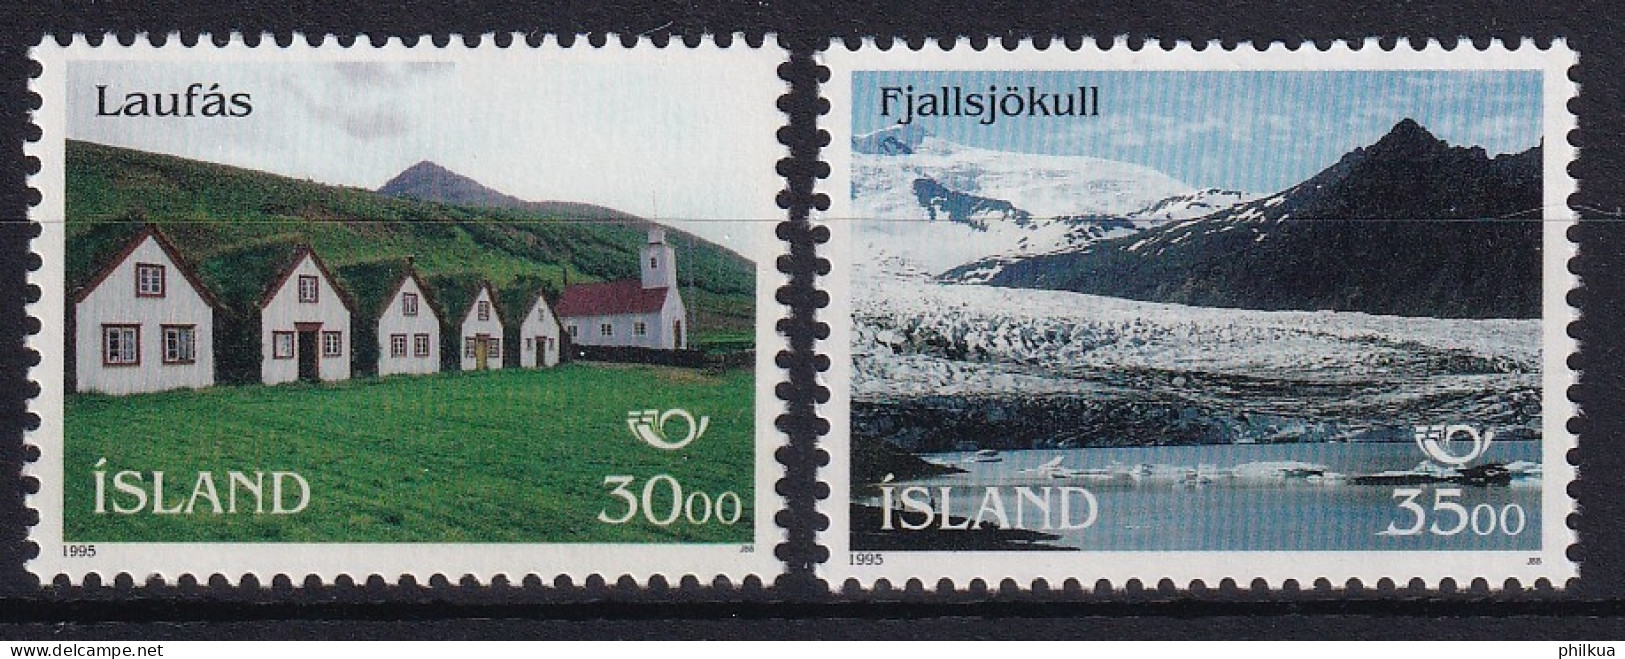 MiNr. 824 - 825 Island 1995, 5. Mai. NORDEN: Tourismus - Postfrisch/**/MNH  - Unused Stamps